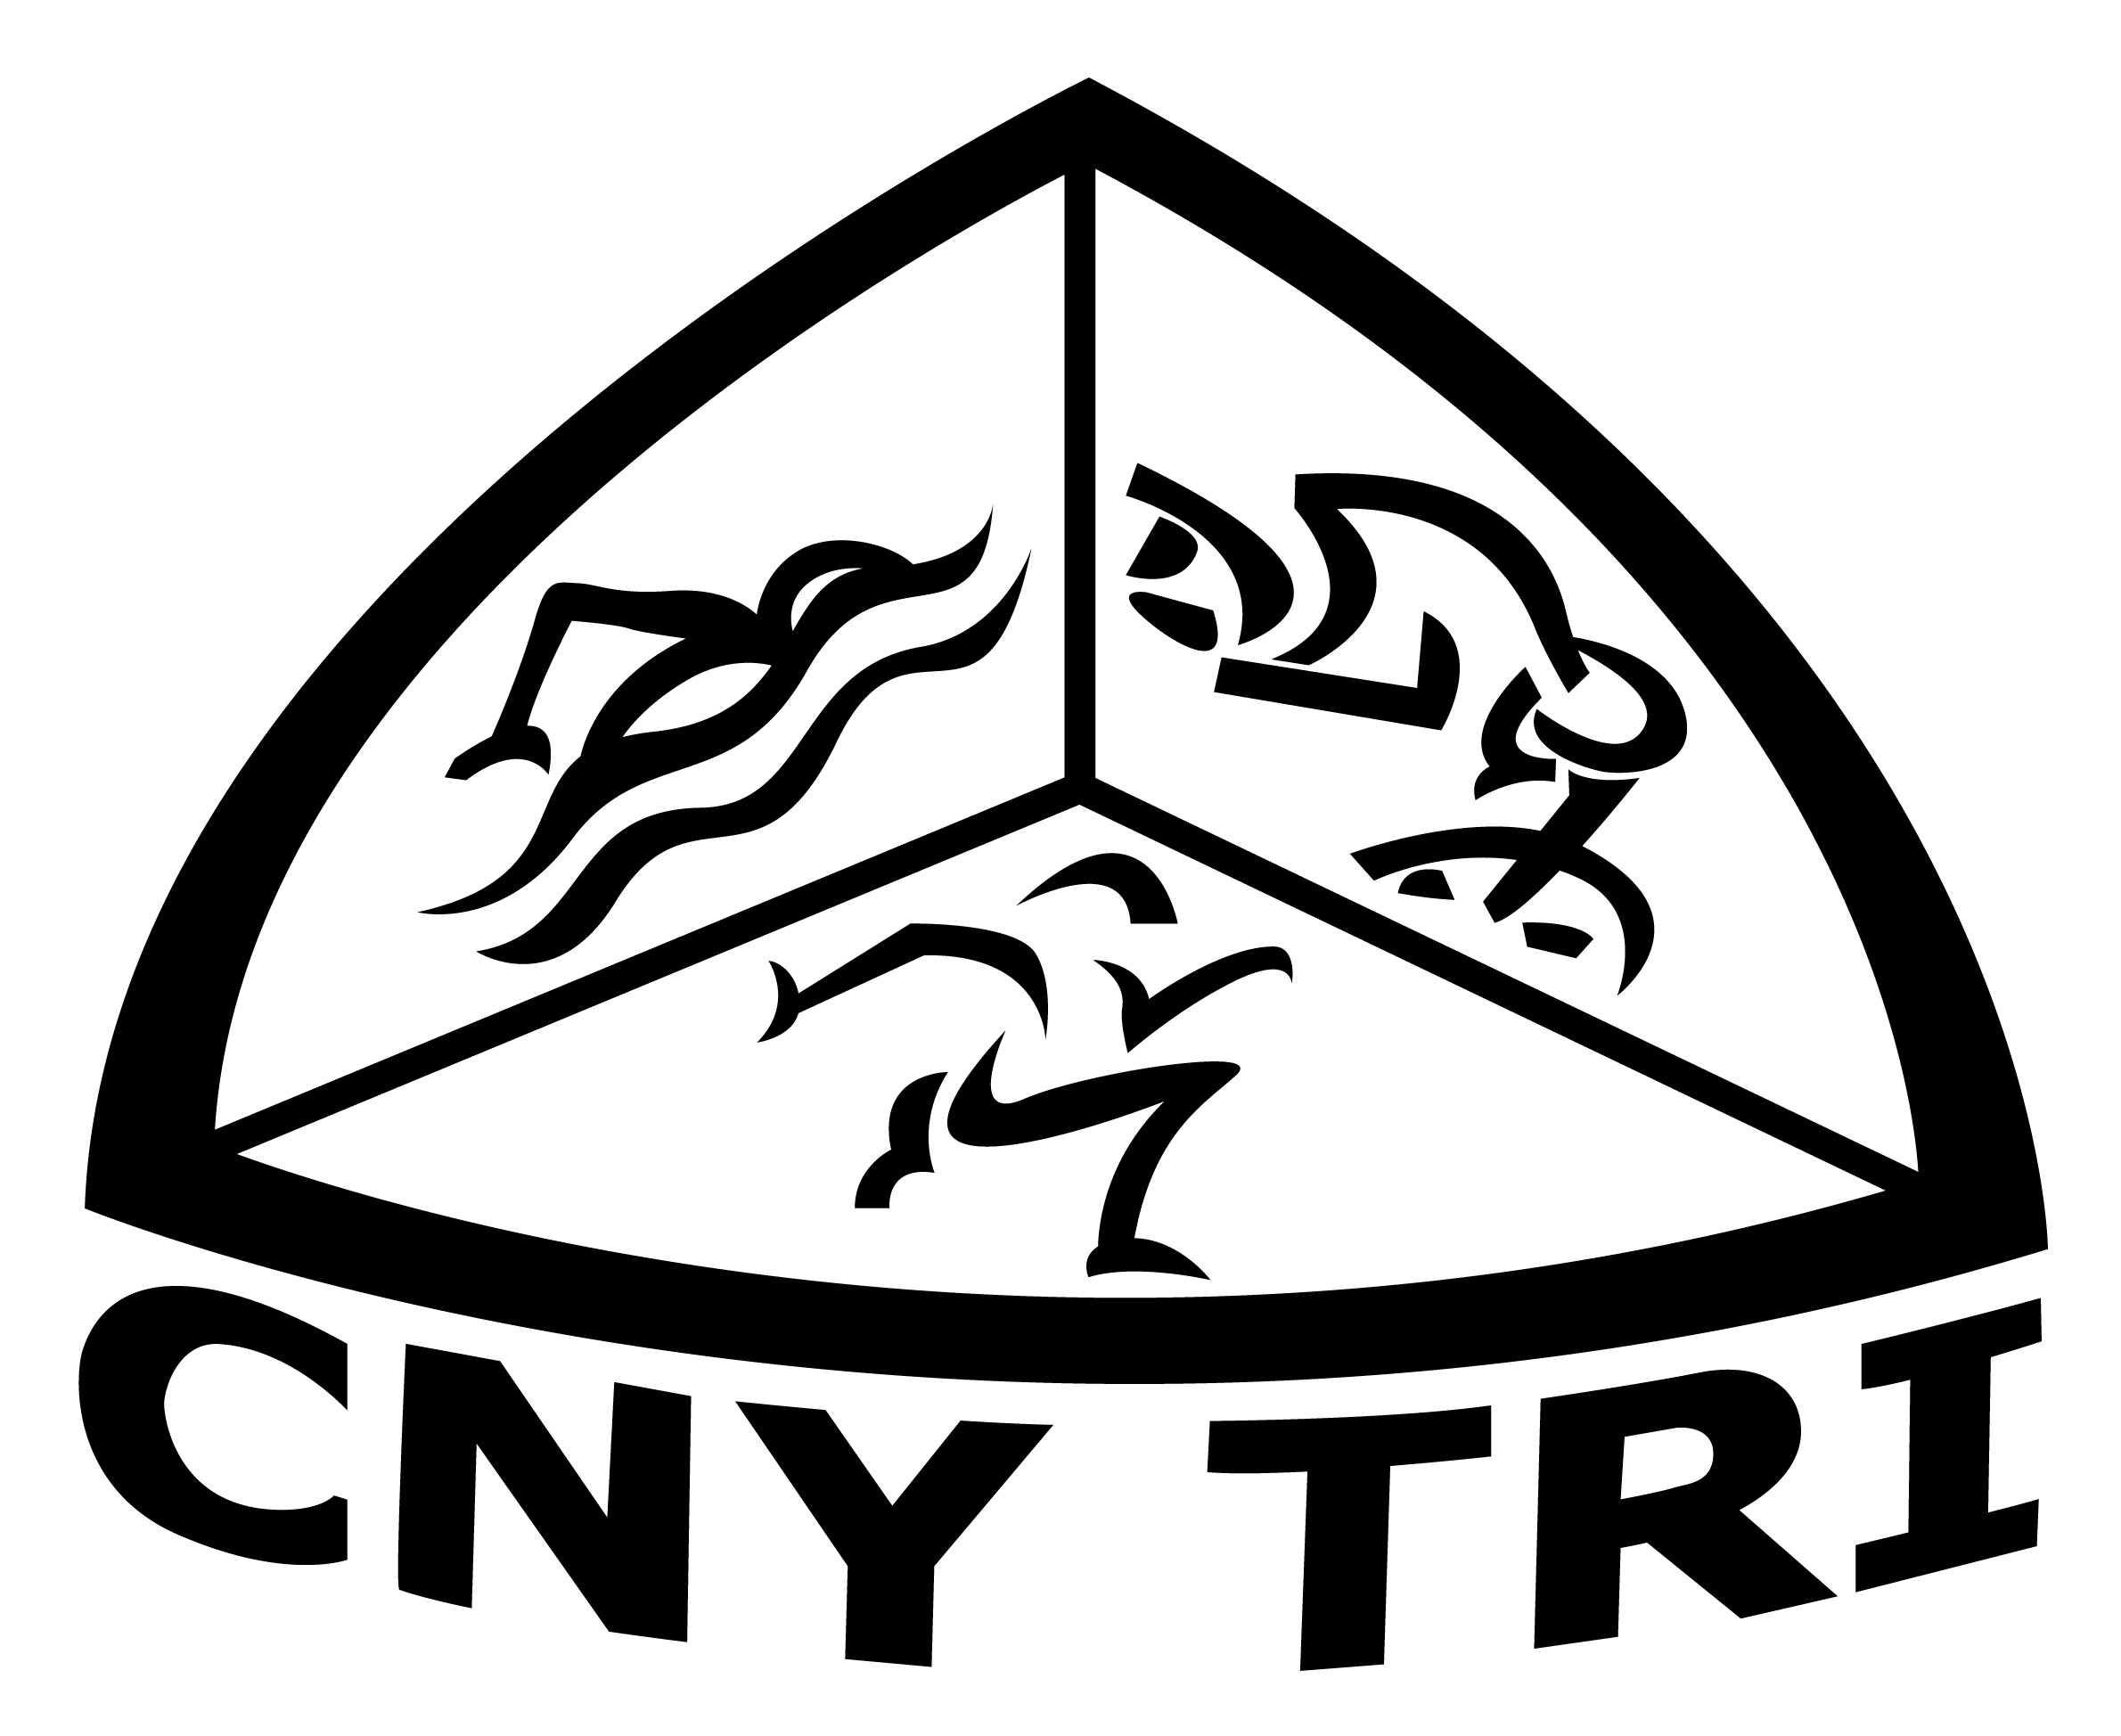 CNY Triathlon Club